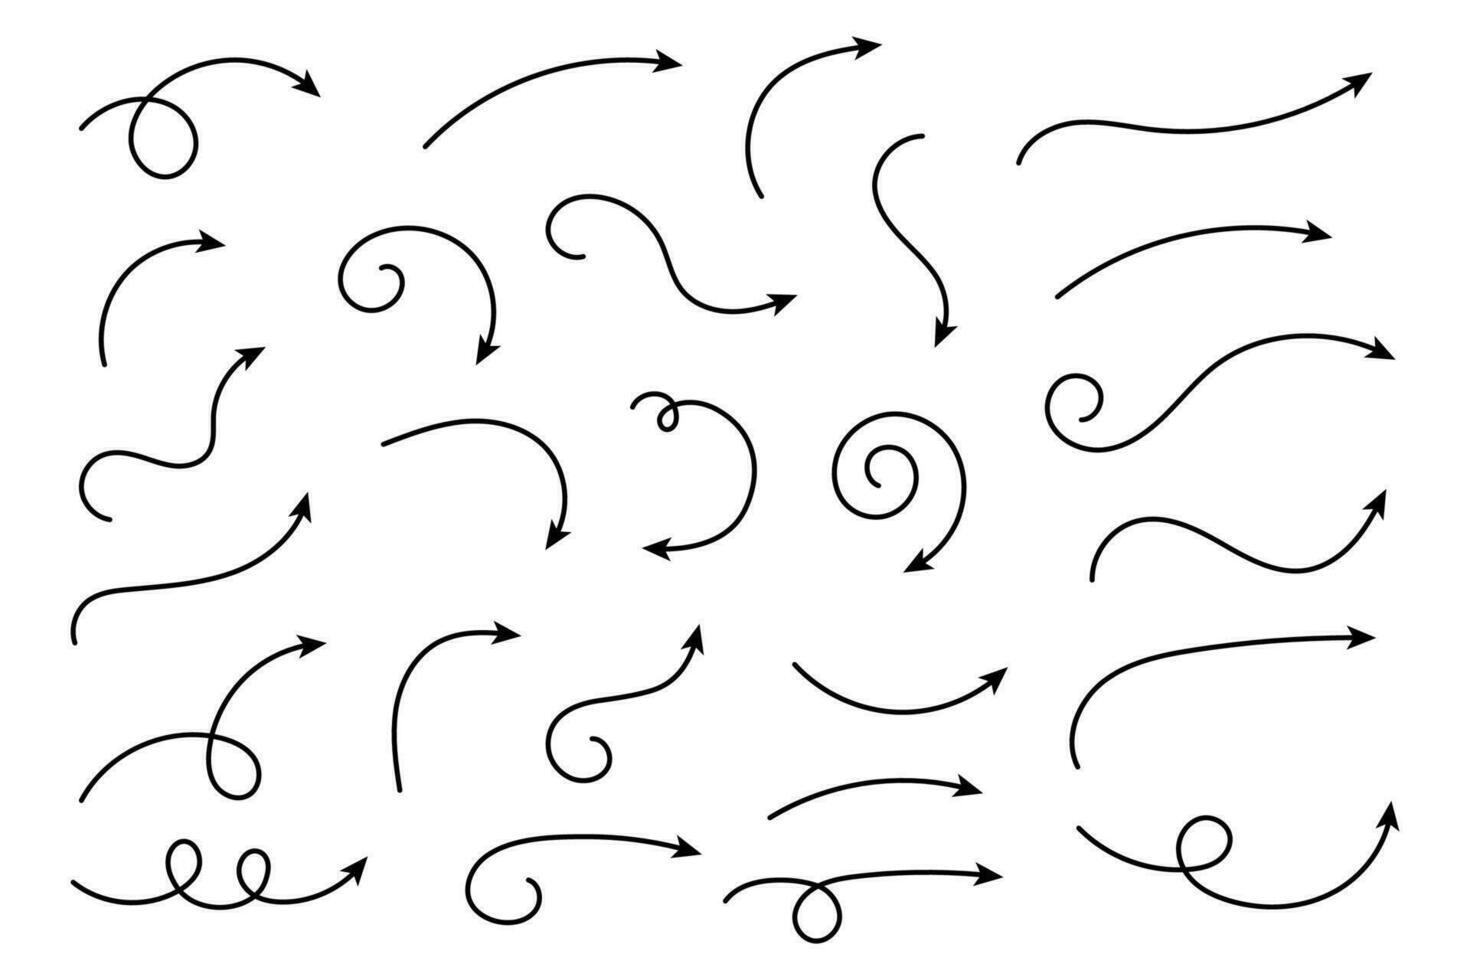 conjunto de vetor setas curvas desenhadas à mão. esboço estilo do doodle. coleção de ponteiros.